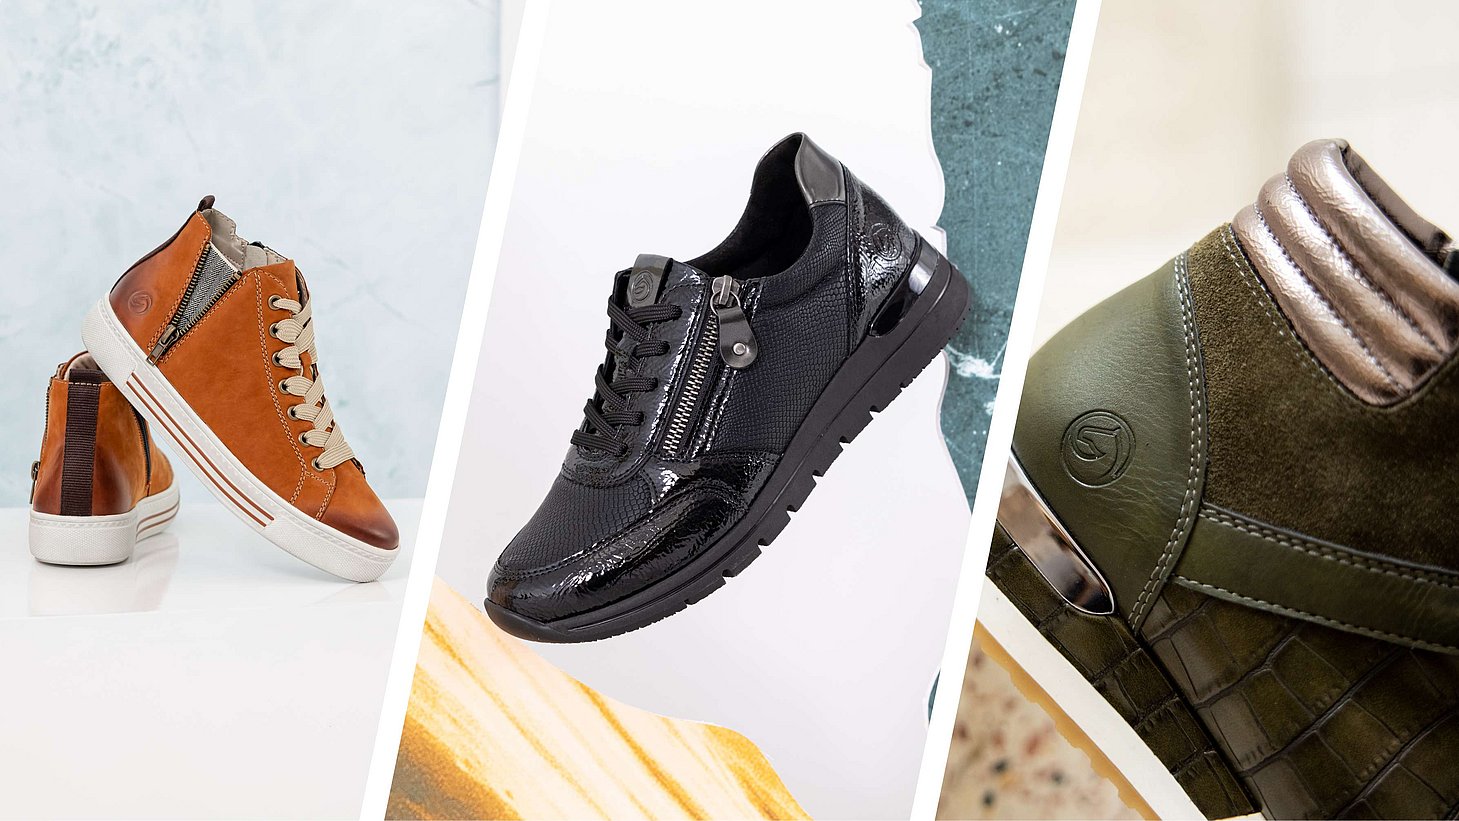 Bildkollage mit stylischen Sneakern in braun, schwarz und dunkelgrün aus der aktuellen Winterkollektion